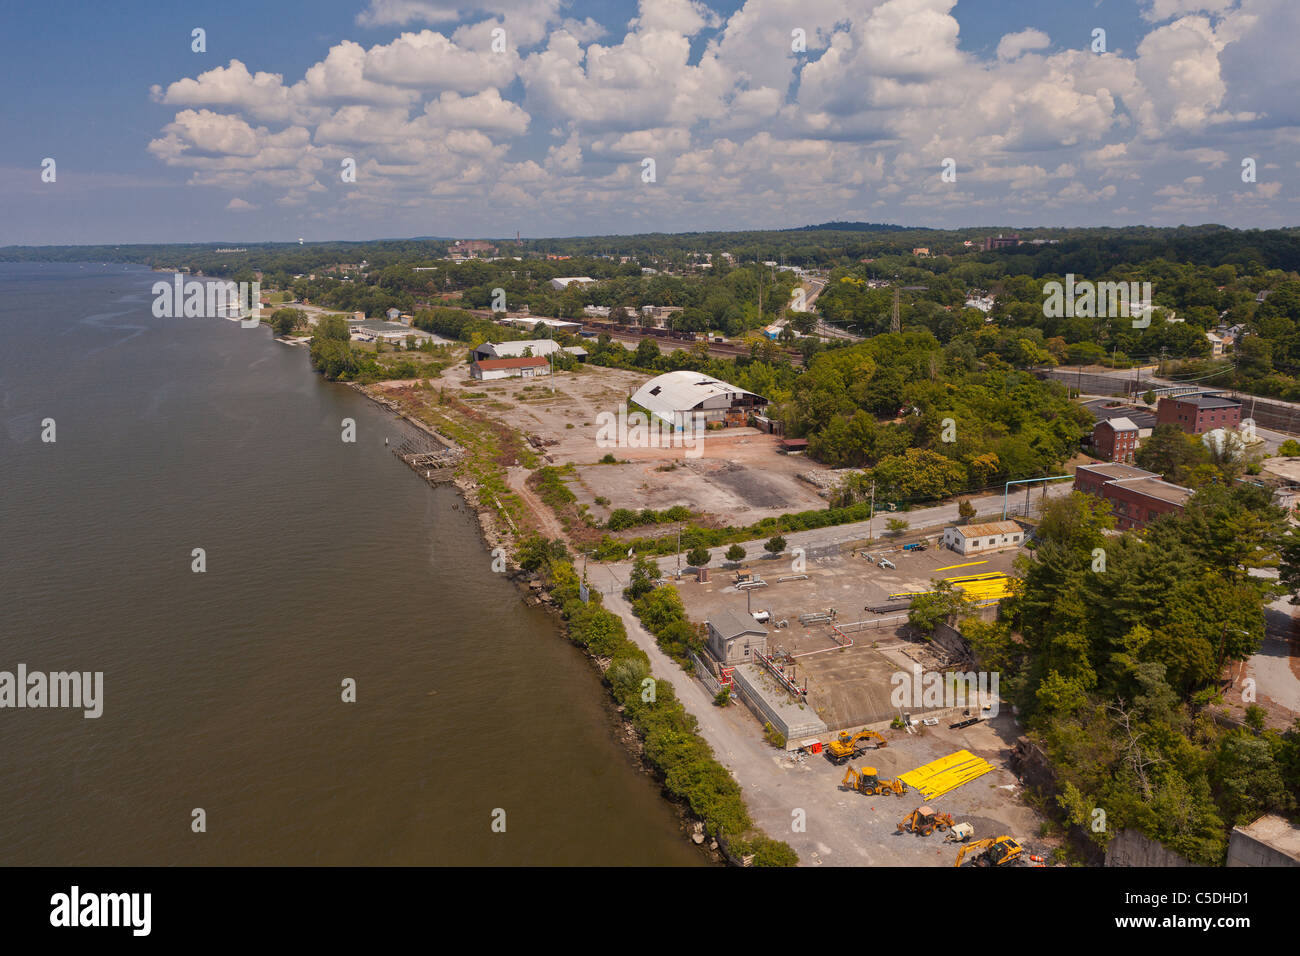 POUGHKEEPSIE, NEW YORK, USA - Luftbild von Brownfield, aufgegeben Gewerbeflächen am Hudson Fluss. Stockfoto